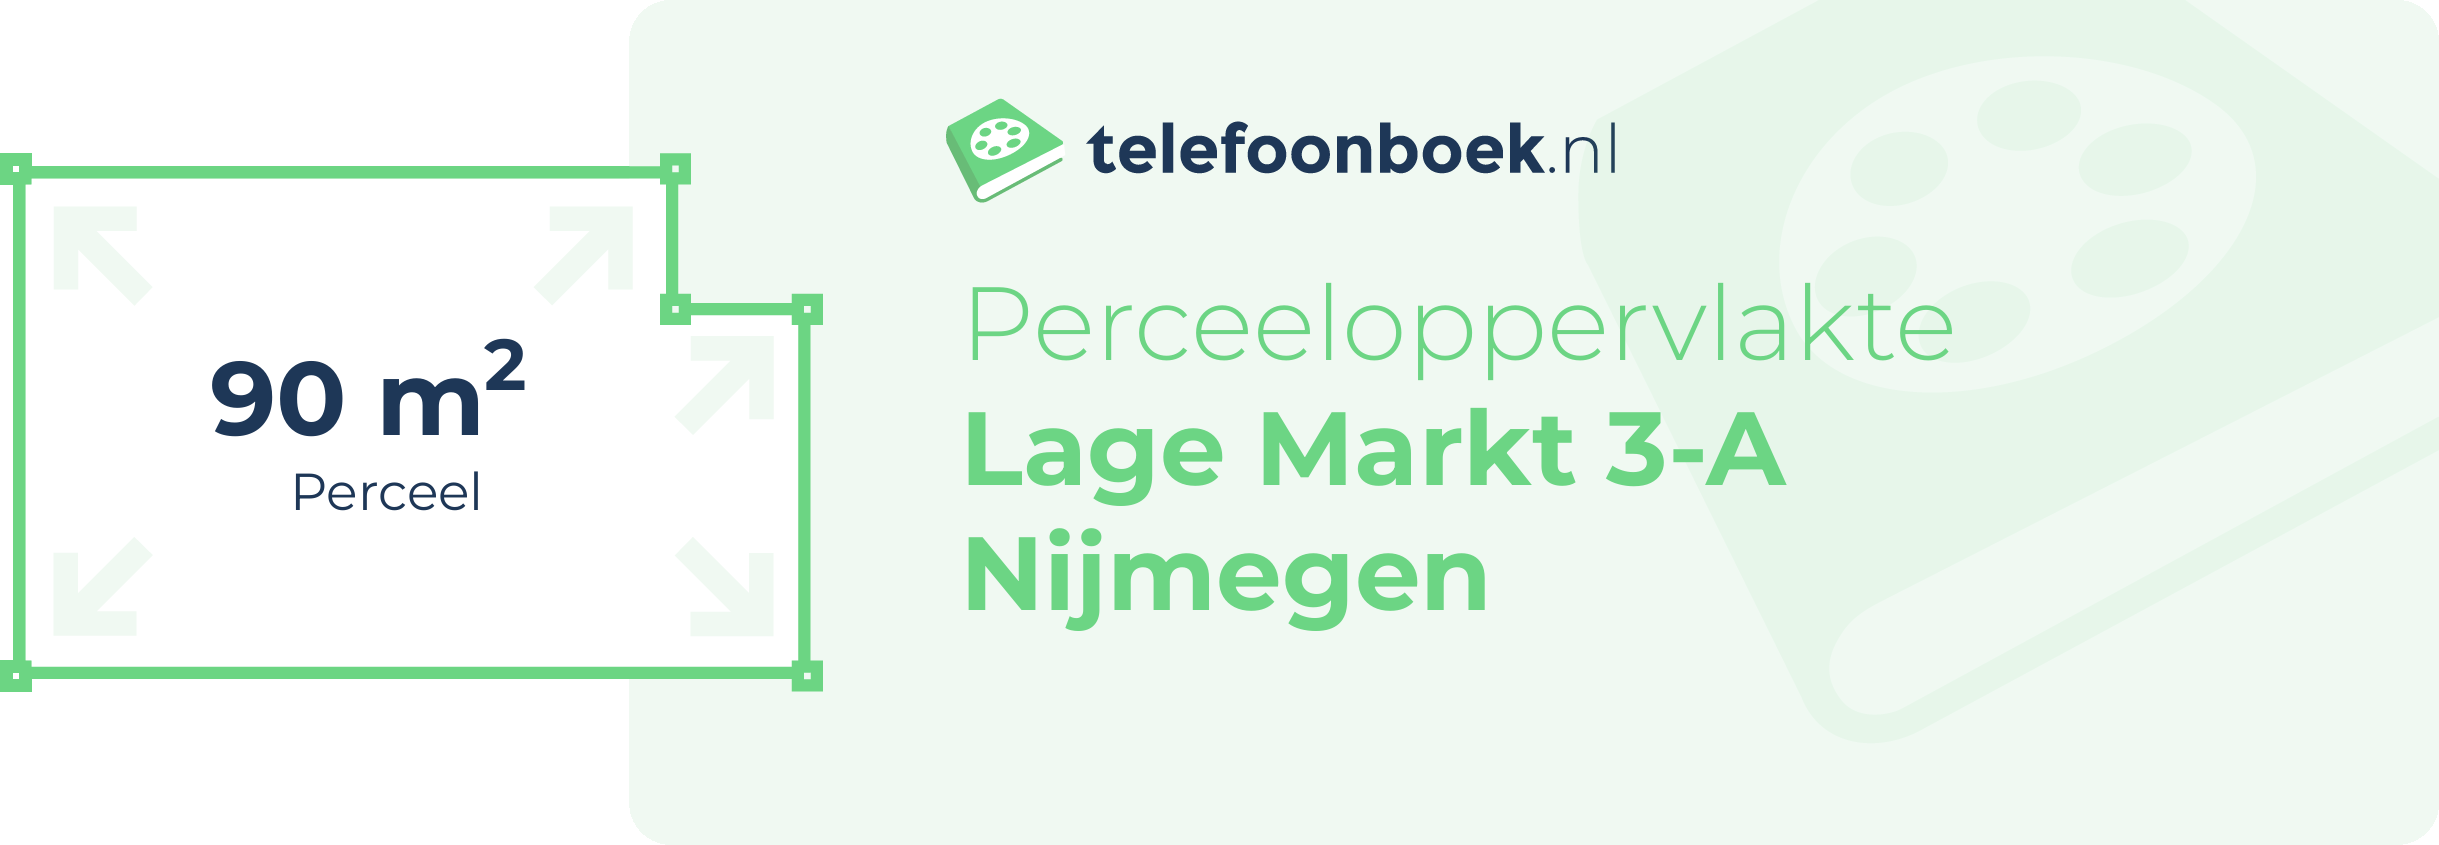 Perceeloppervlakte Lage Markt 3-A Nijmegen